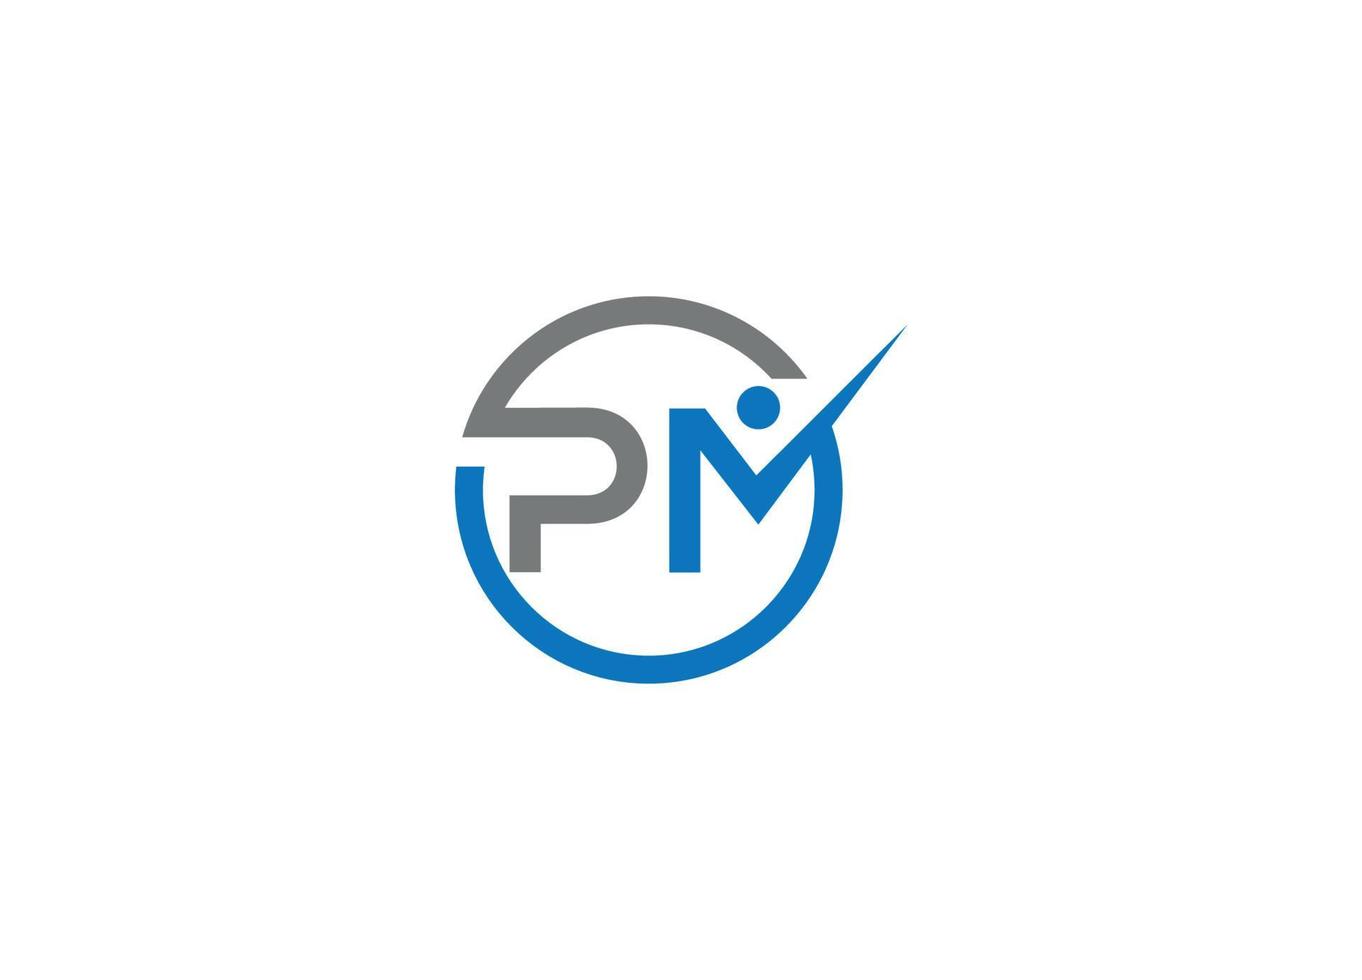 Modelo de ícone de vetor de design de logotipo pm com fundo branco